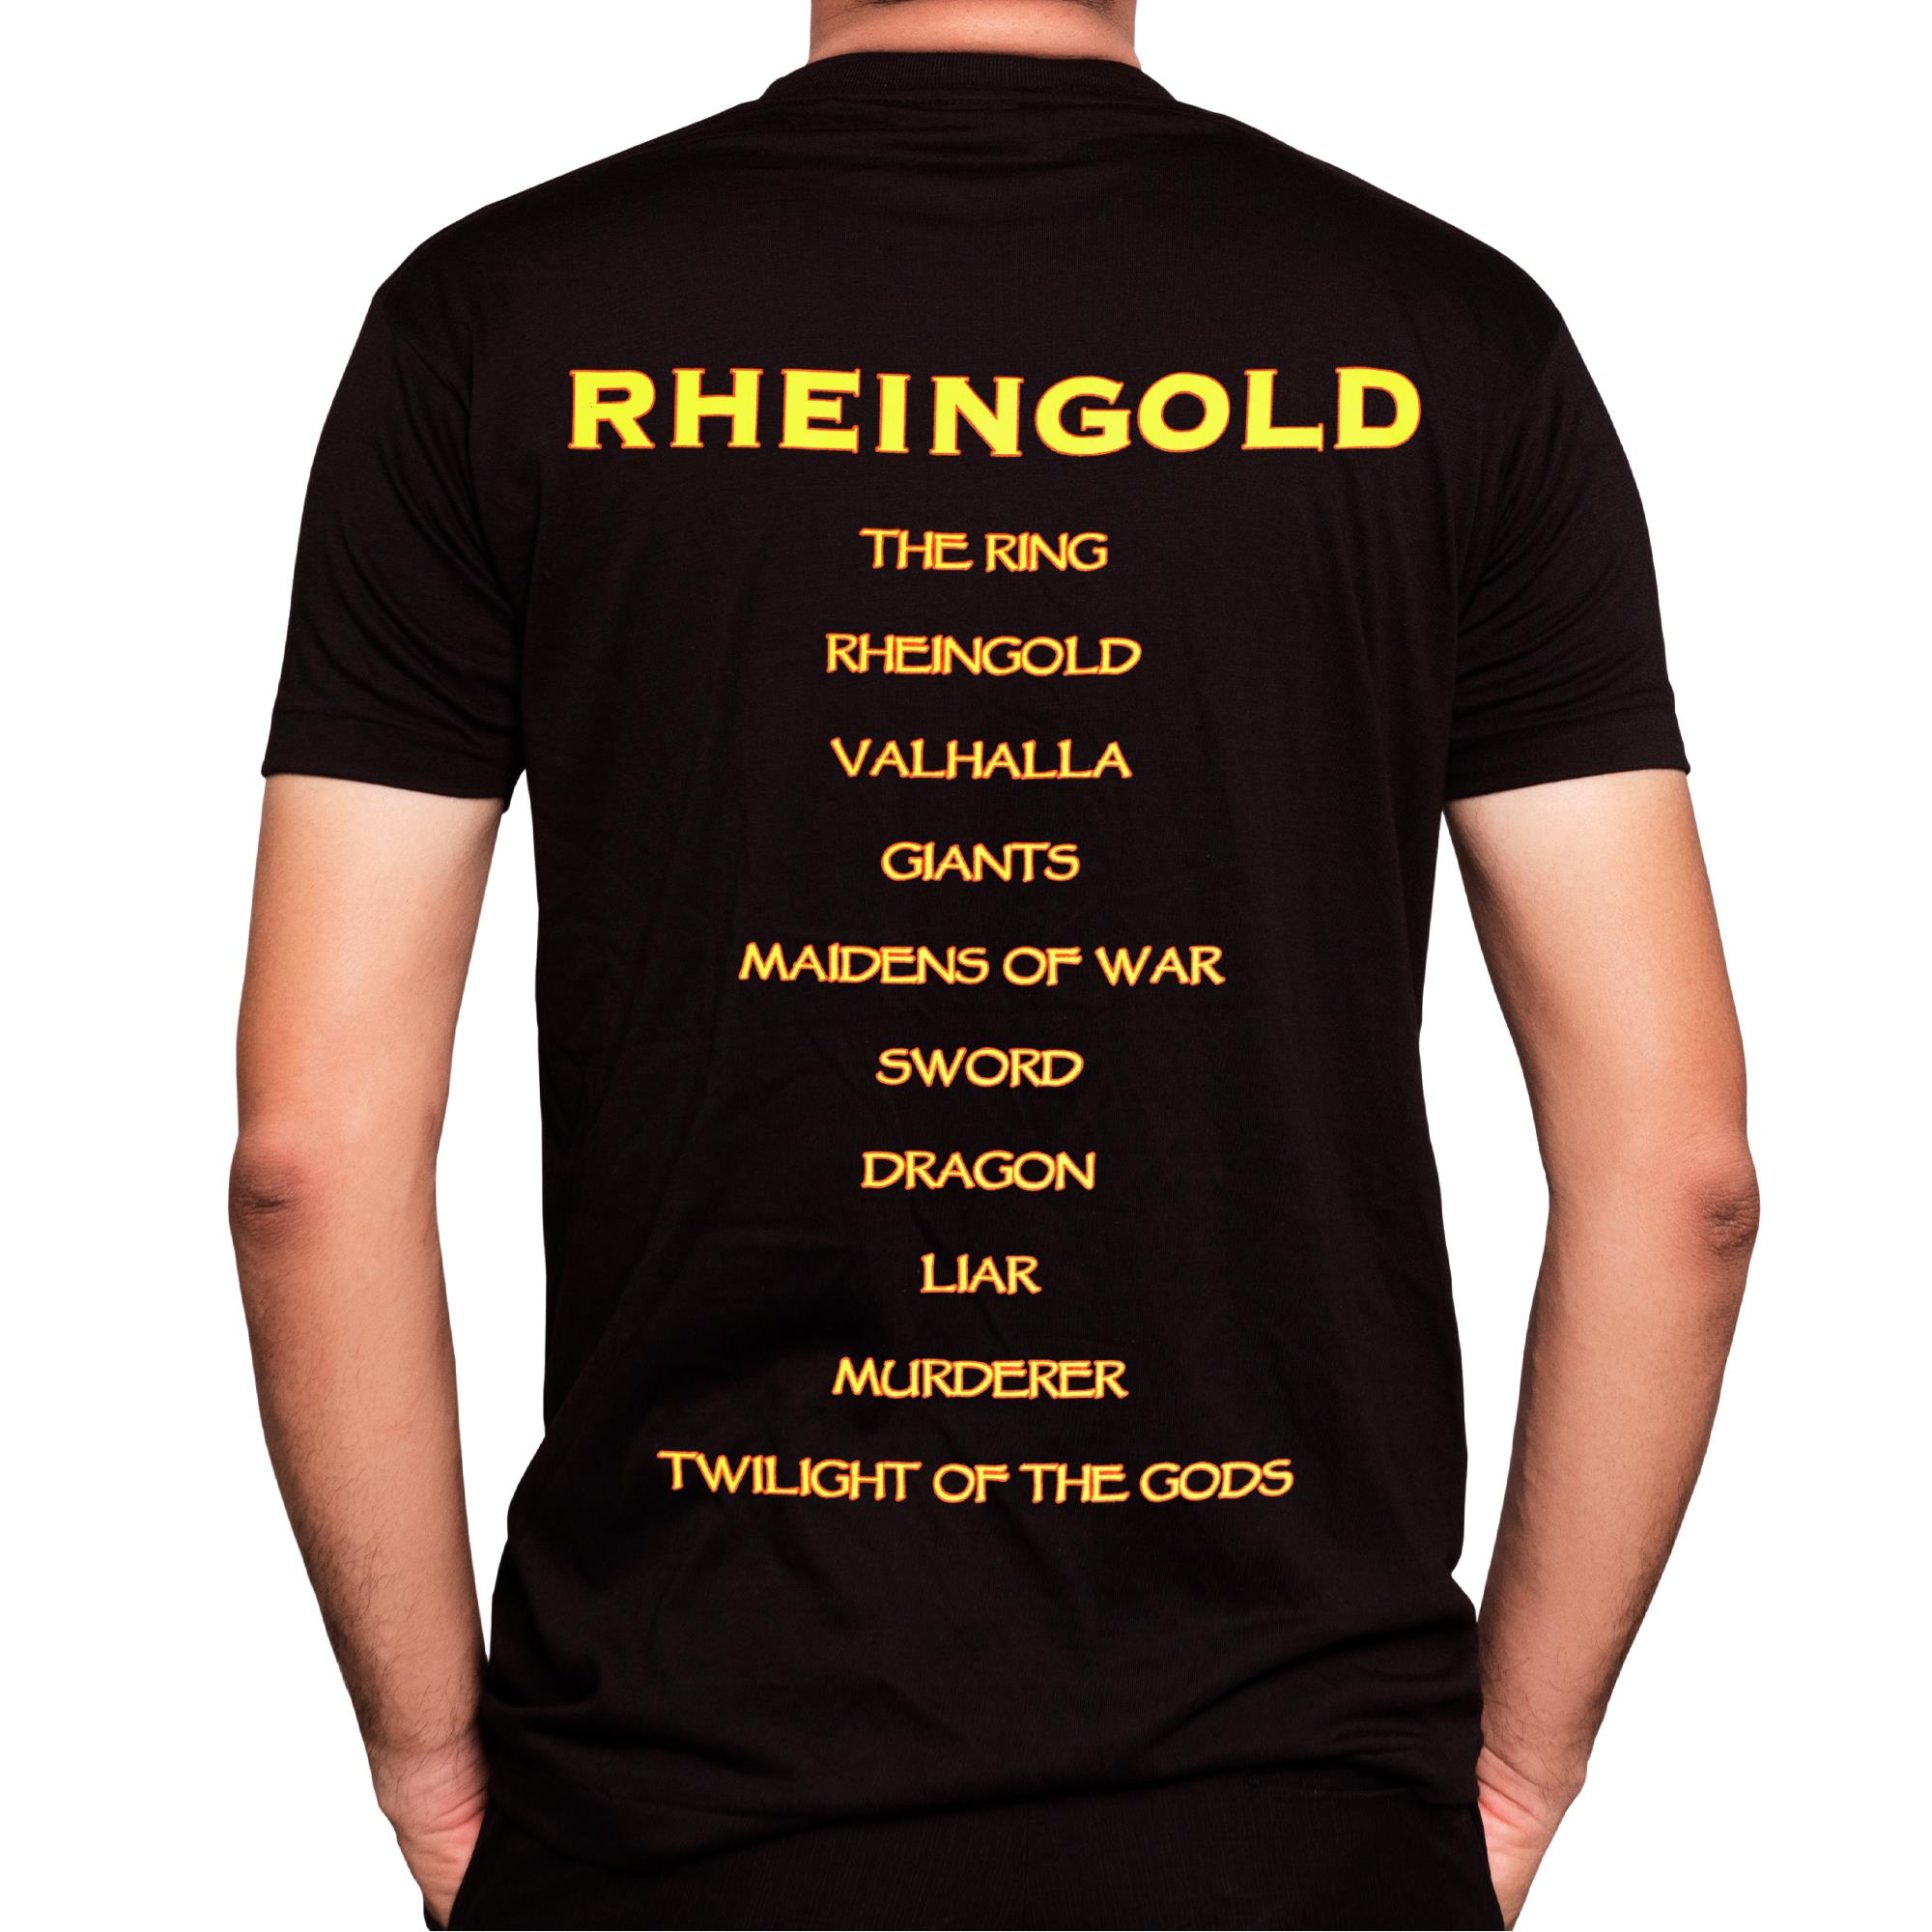 Rheingold T-Shirt